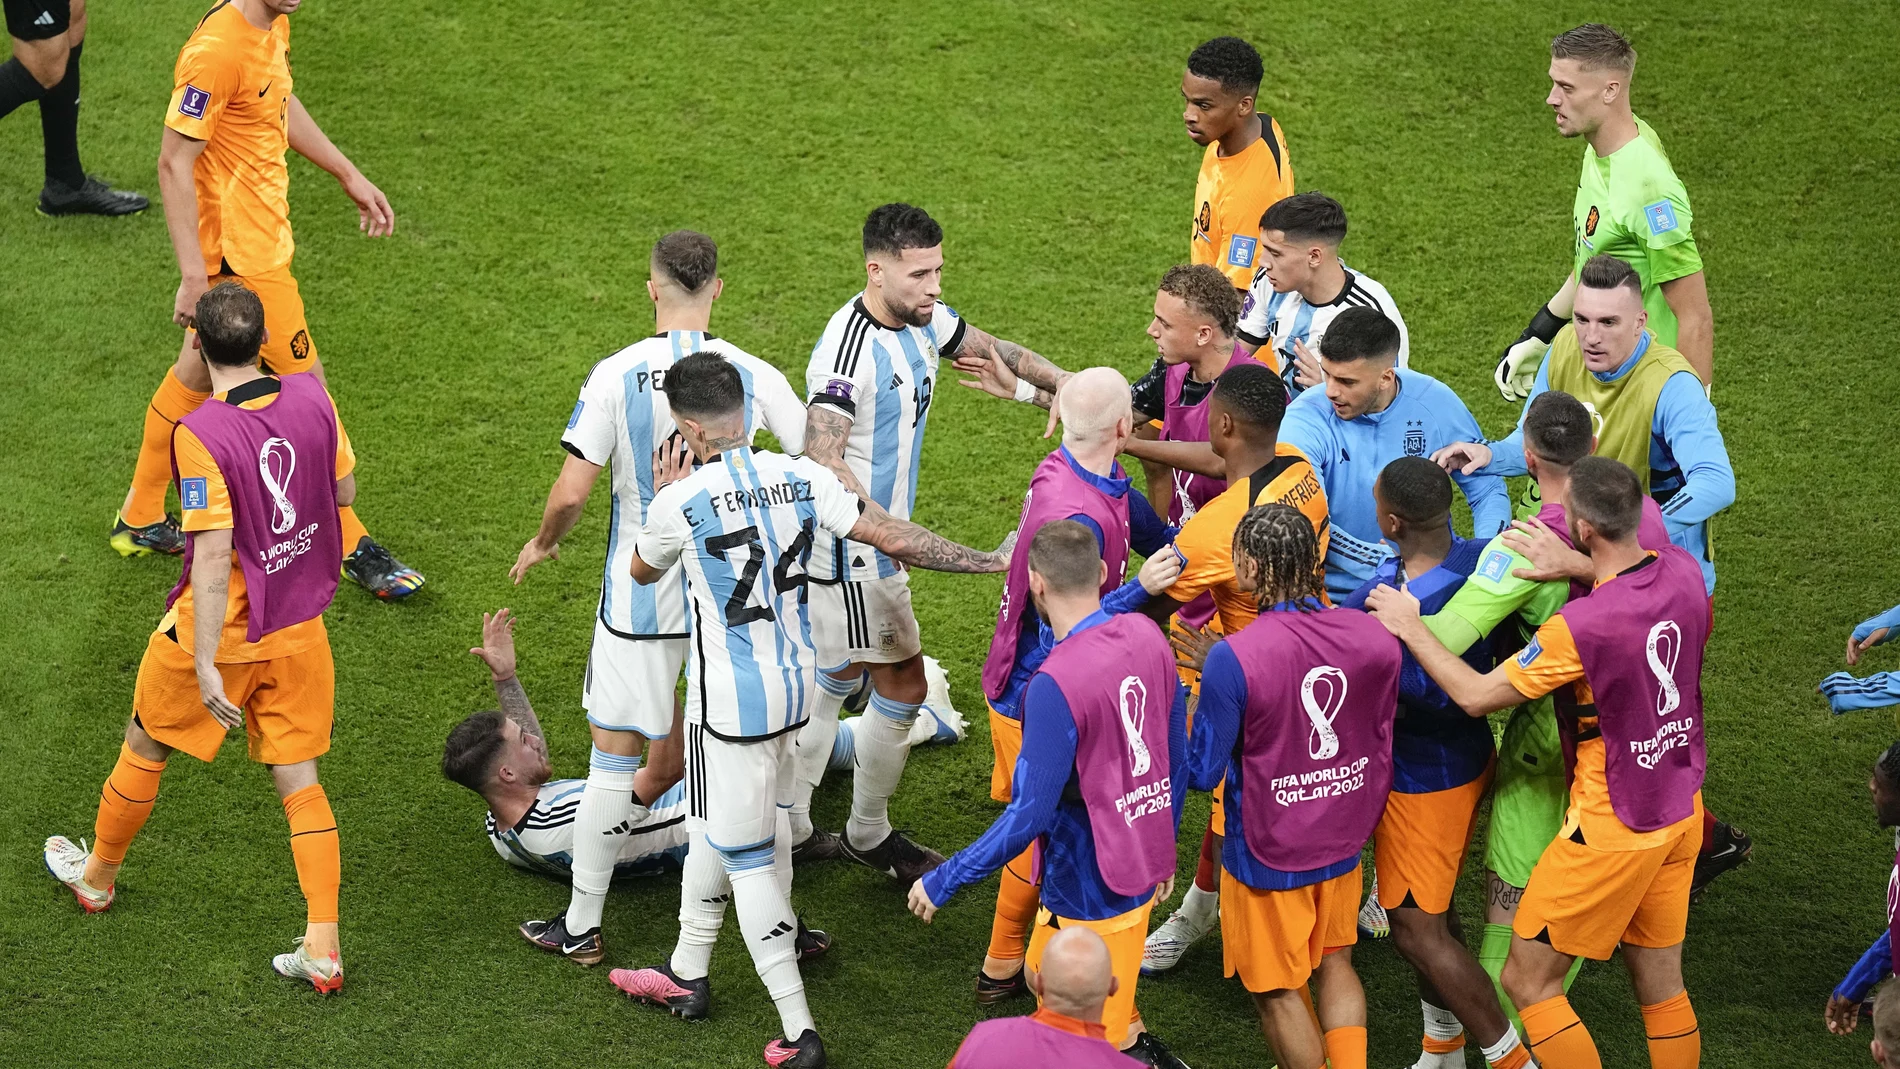 Países Bajos ha empatado a Argentina en el último minuto con un gol de jugada ensayada